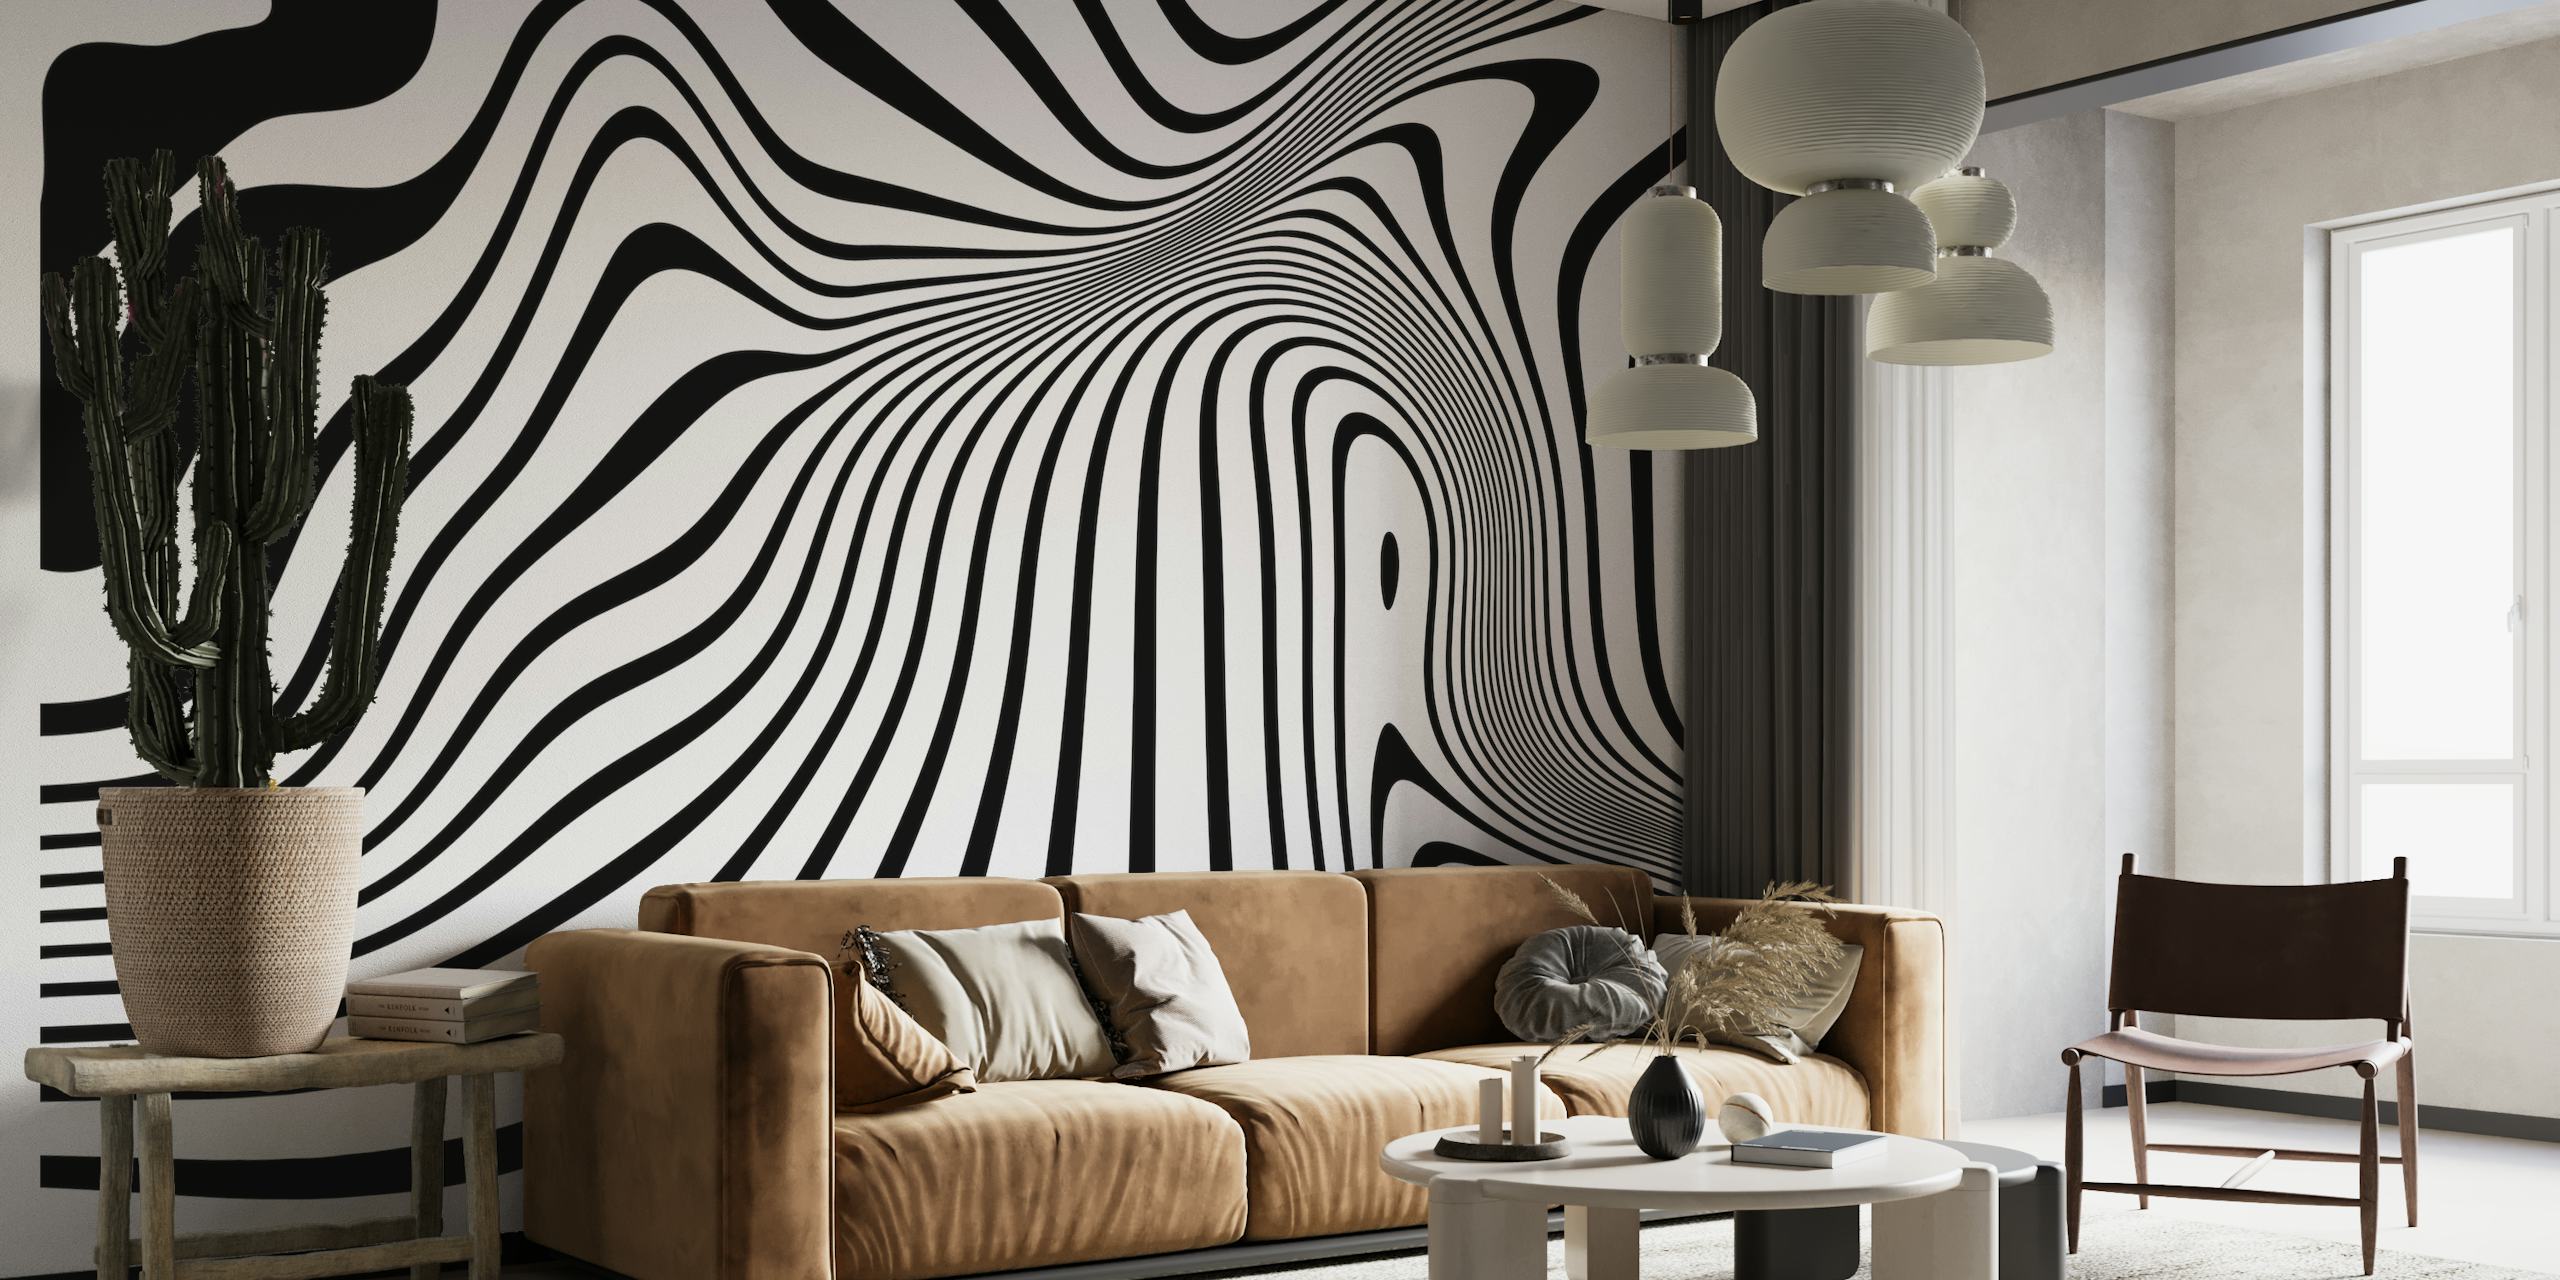 Abstrakt linjekunst i svart og hvitt veggmaleri med flytende, organiske former som skaper en dynamisk visuell tekstur